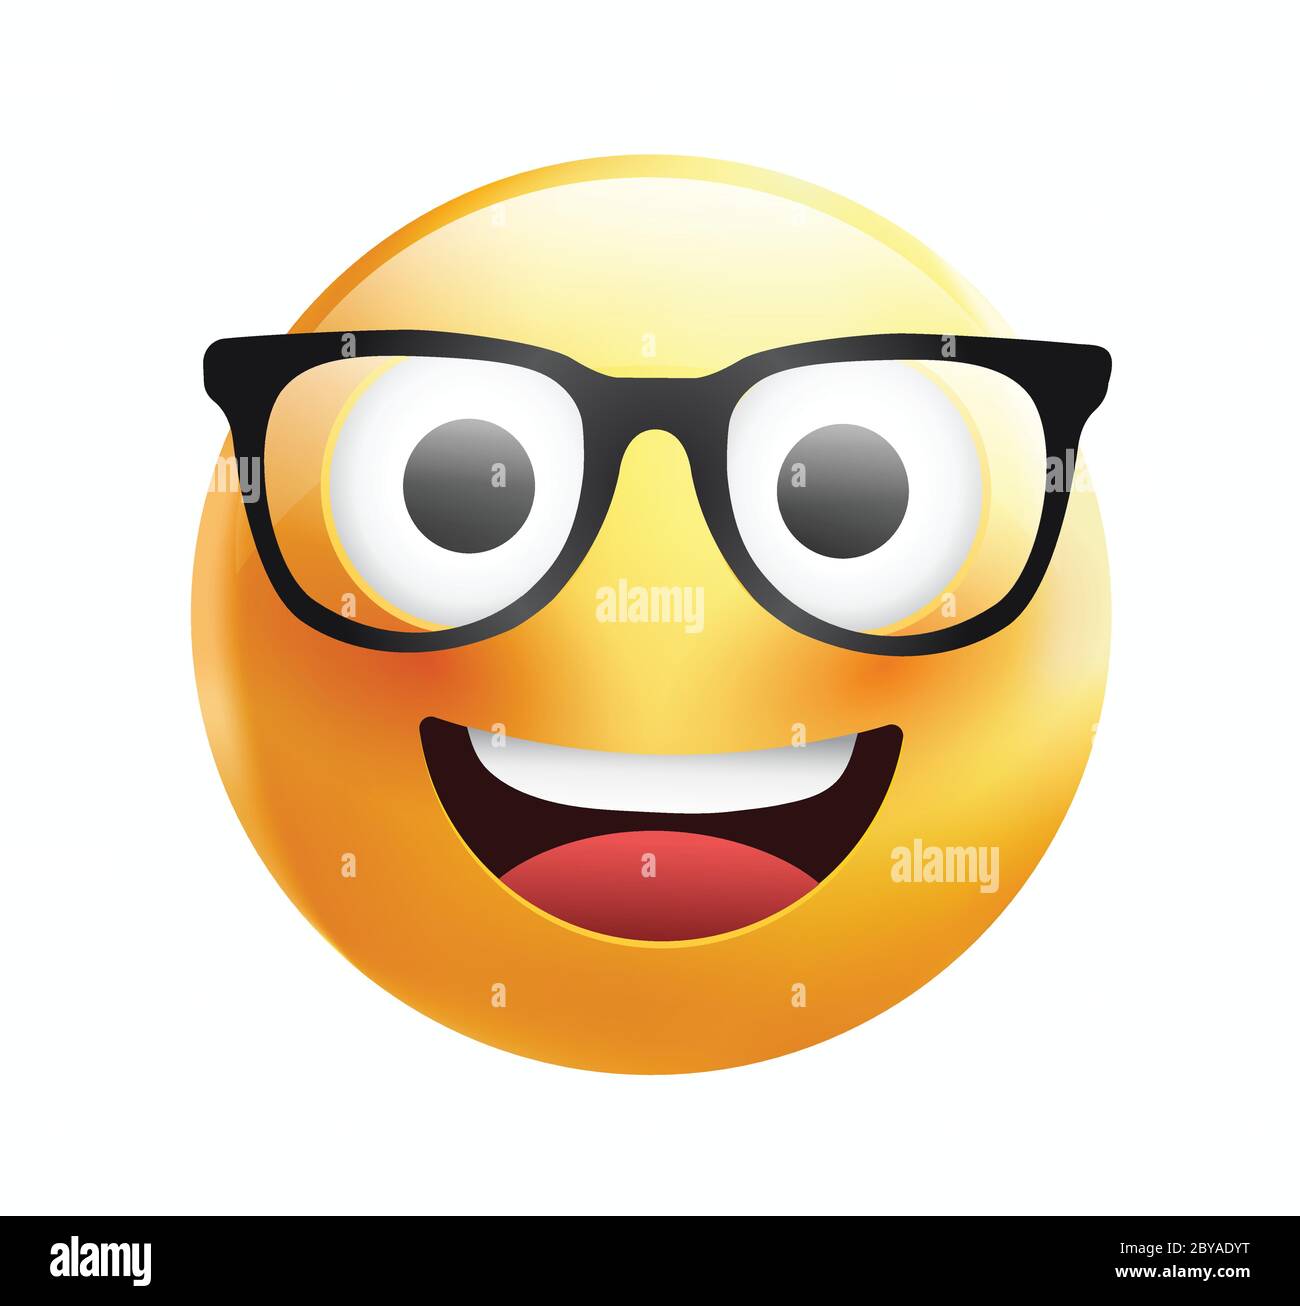 Hochwertiges Emoticon auf weißem Hintergrund. Gelbes Gesicht mit Brille.Süße  lächelnde Emoticon trägt Brillen, Emoji, Smiley Vektor-Illustration  Stock-Vektorgrafik - Alamy